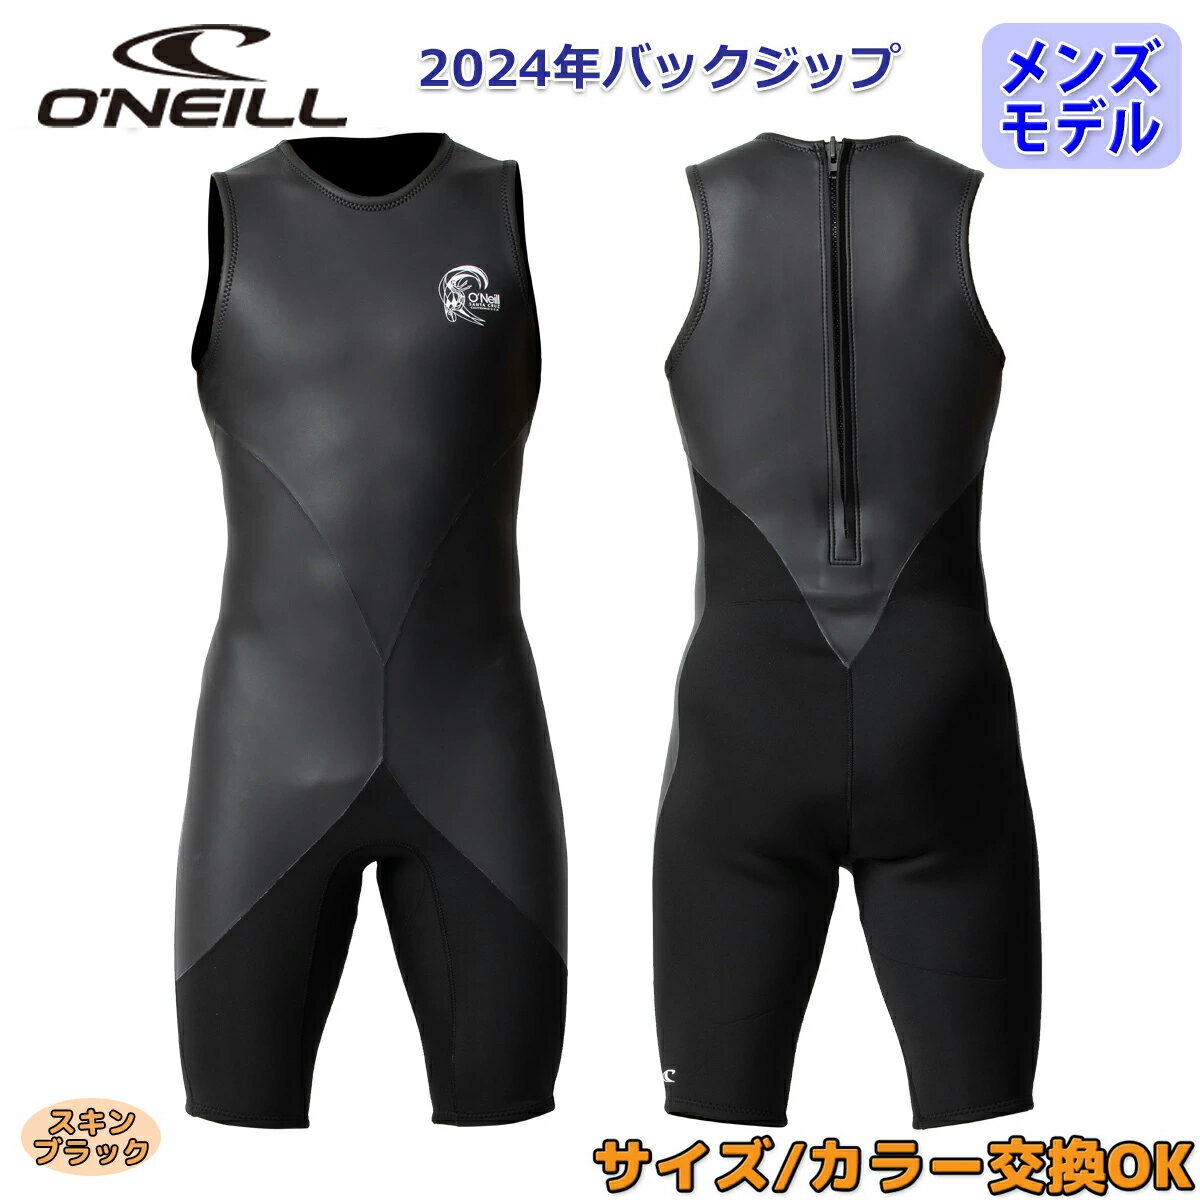 24 O'NEILL オニール ショートジョン ウェットスーツ ウエットスーツ バックジップ バリュー 春夏用 メンズモデル 2024年 SUPERLITE CLASSIC スーパーライトクラシック品番 WSS-301A3 日本正規品 1